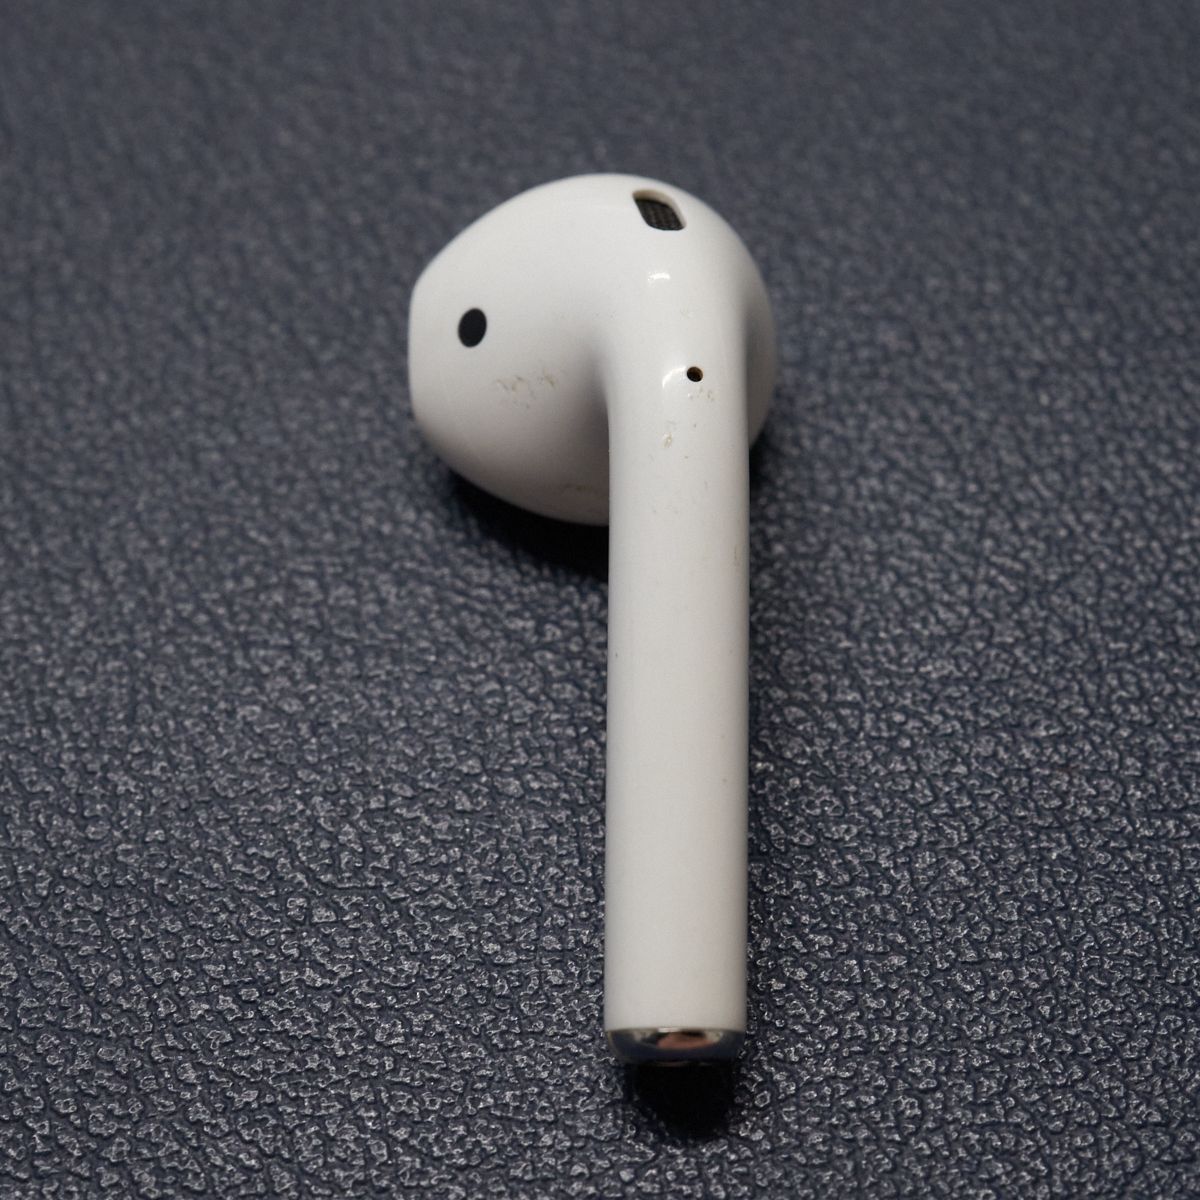 Apple AirPods エアーポッズ USED品 左イヤホンのみ L 片耳 A1722 第一